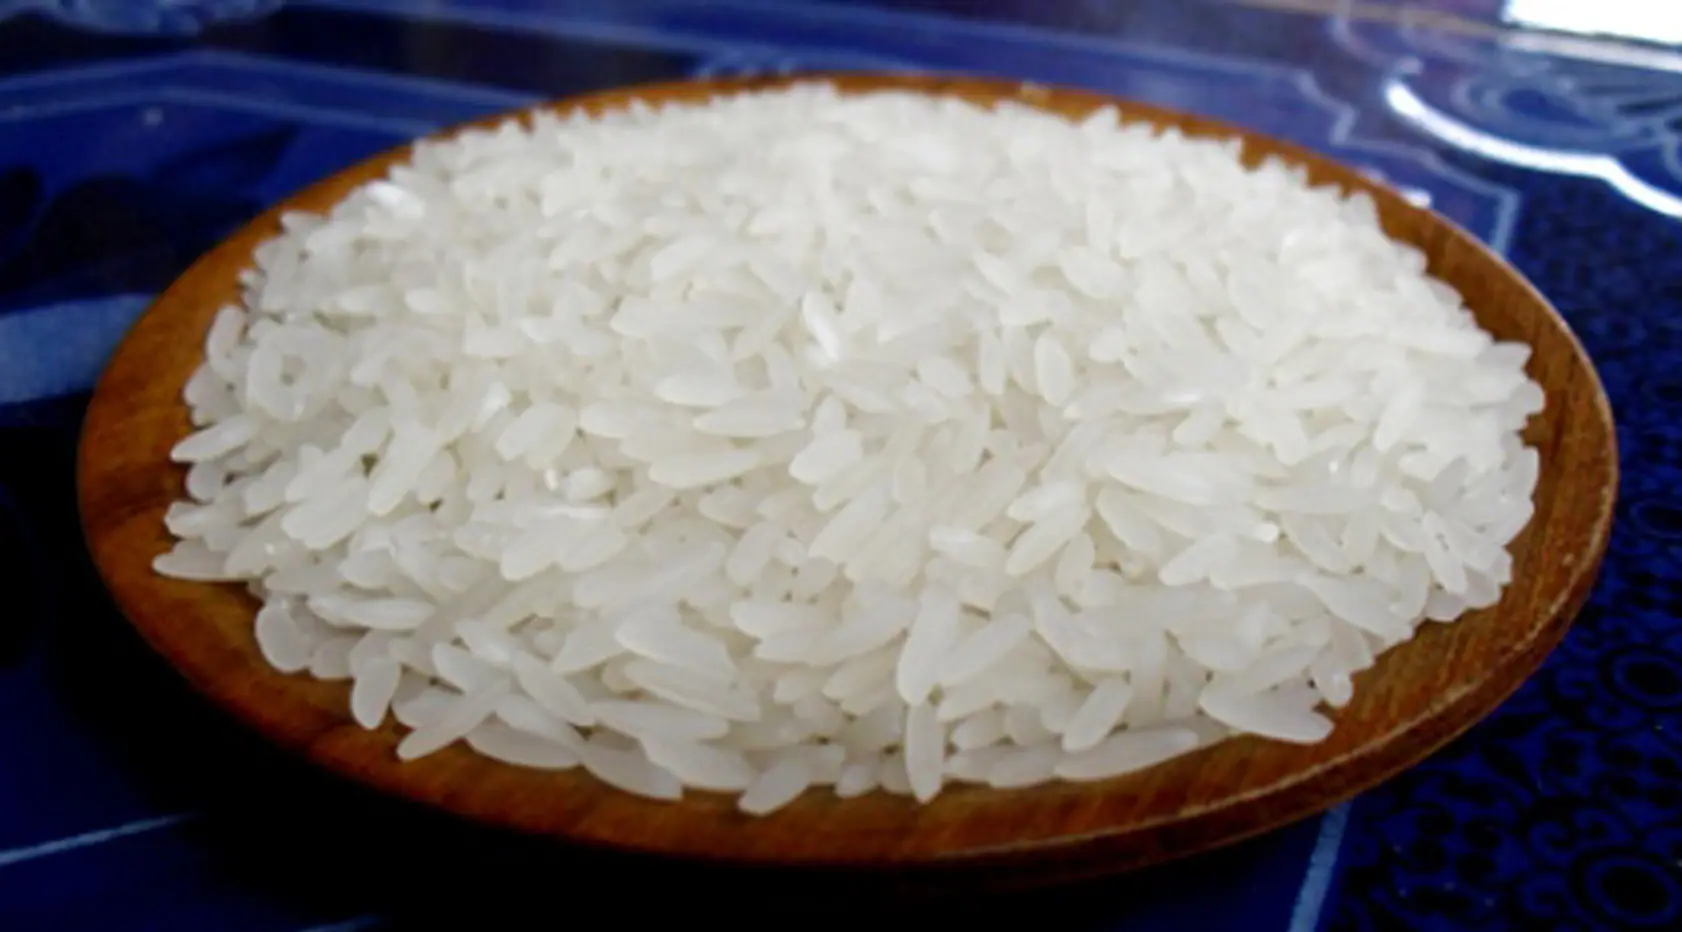 Jangan sampai kamu nggak tahu, begini lho tips memilih beras yang maknyus dan sehat. (Sumber Foto: Istimewa)